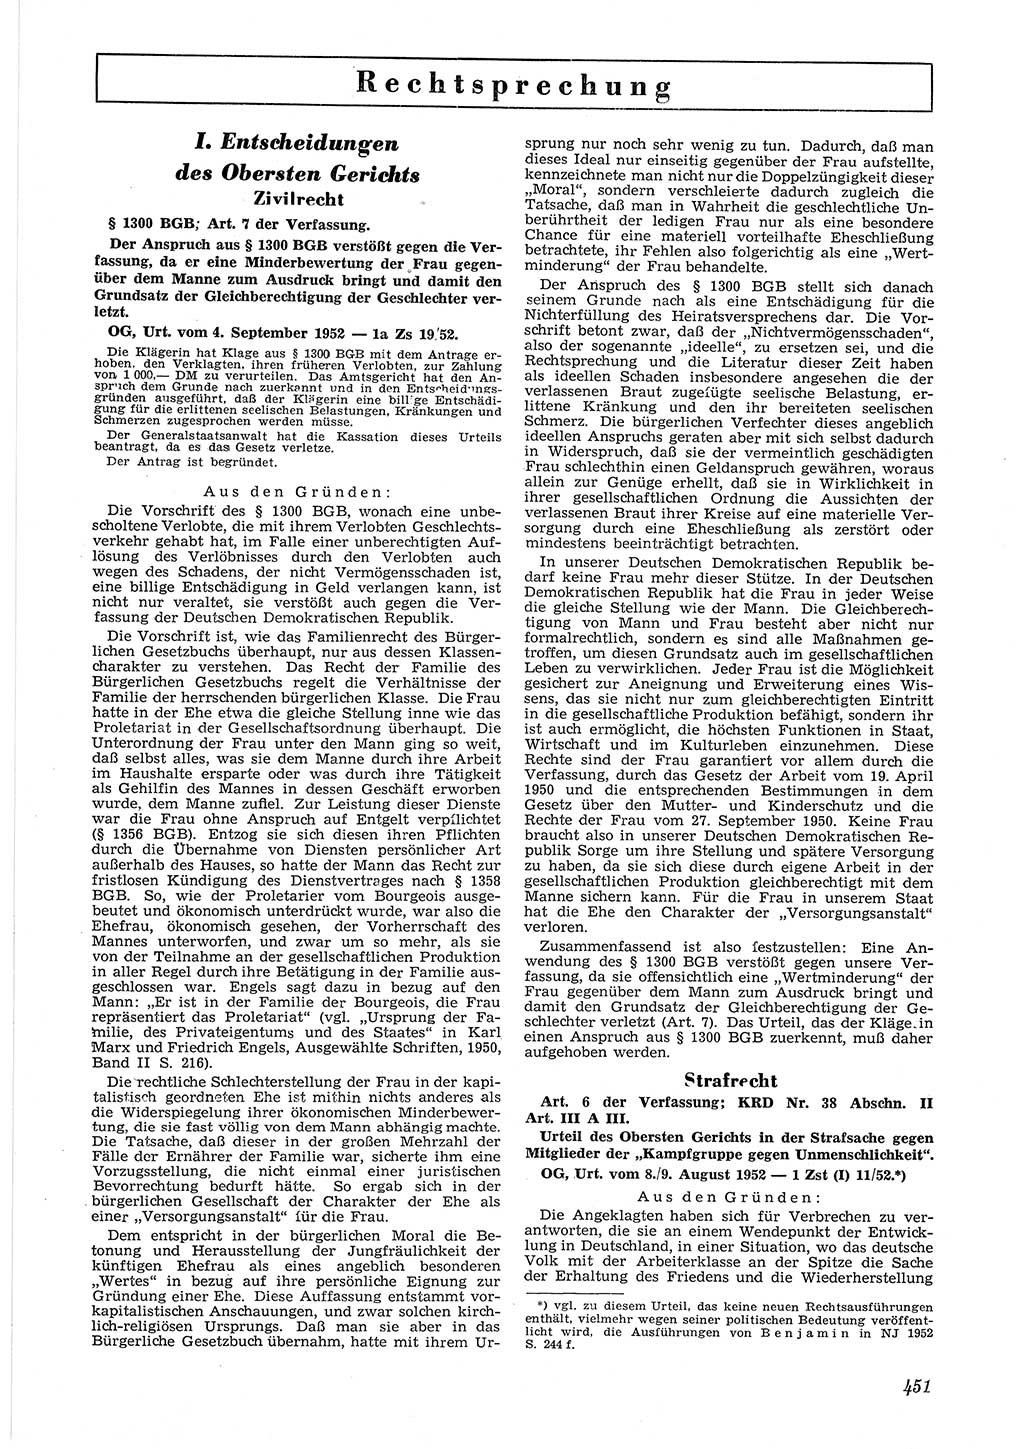 Neue Justiz (NJ), Zeitschrift für Recht und Rechtswissenschaft [Deutsche Demokratische Republik (DDR)], 6. Jahrgang 1952, Seite 451 (NJ DDR 1952, S. 451)